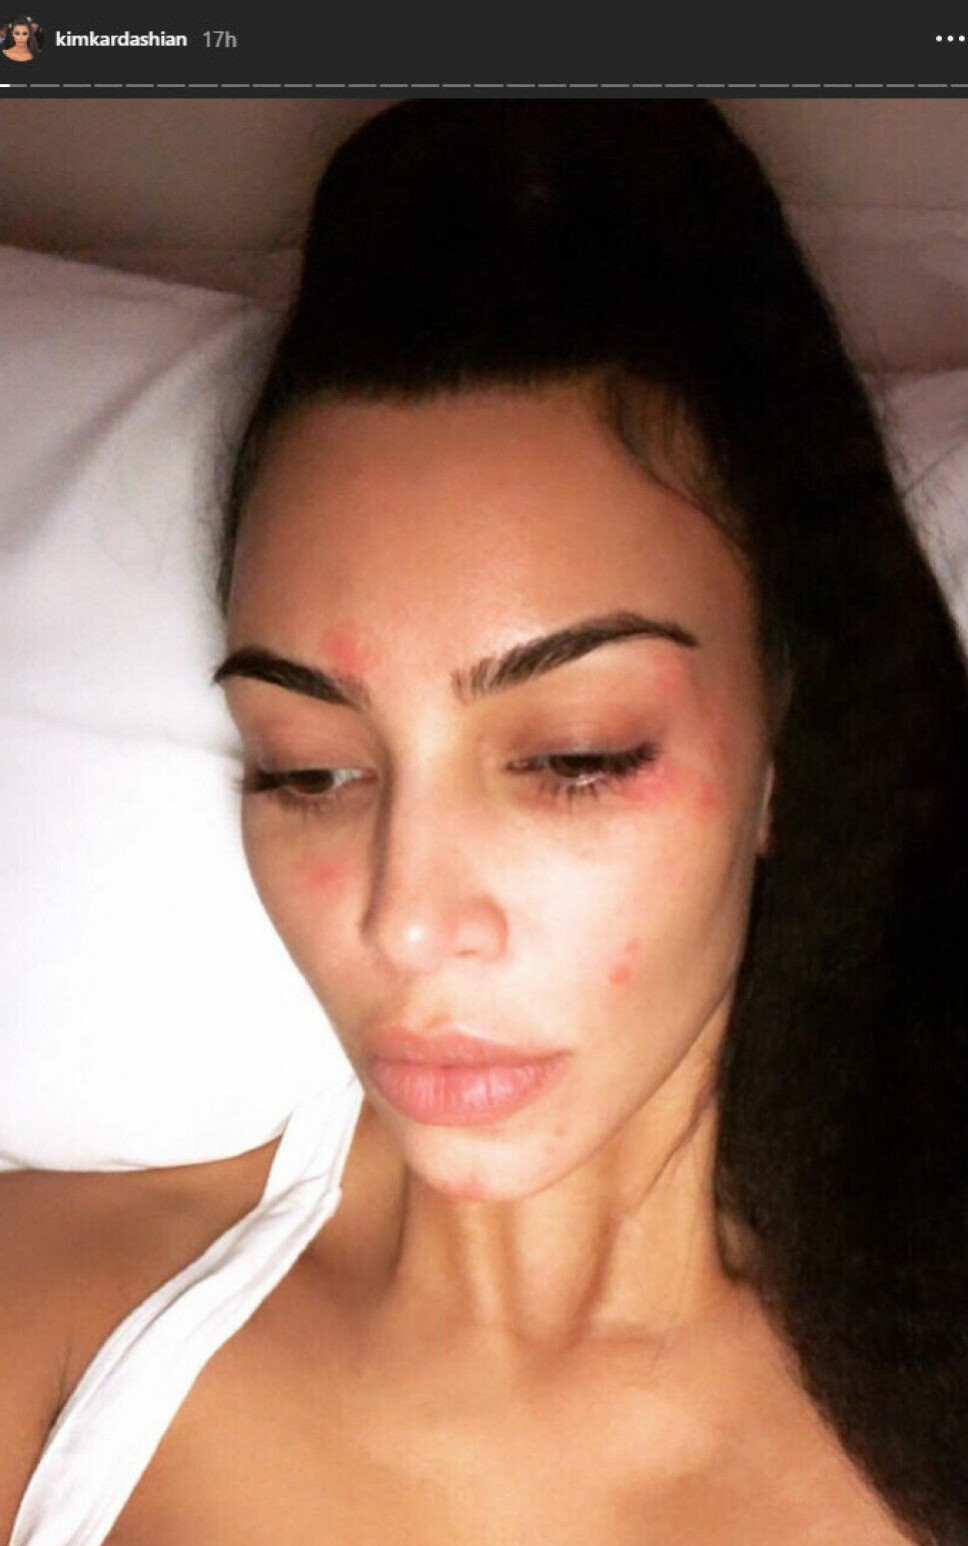 UTEN SMINKE: Kim Kardashian har hudtilstanden psoriasis og viste frem huden sin uten sminke på Instagram stories nylig.